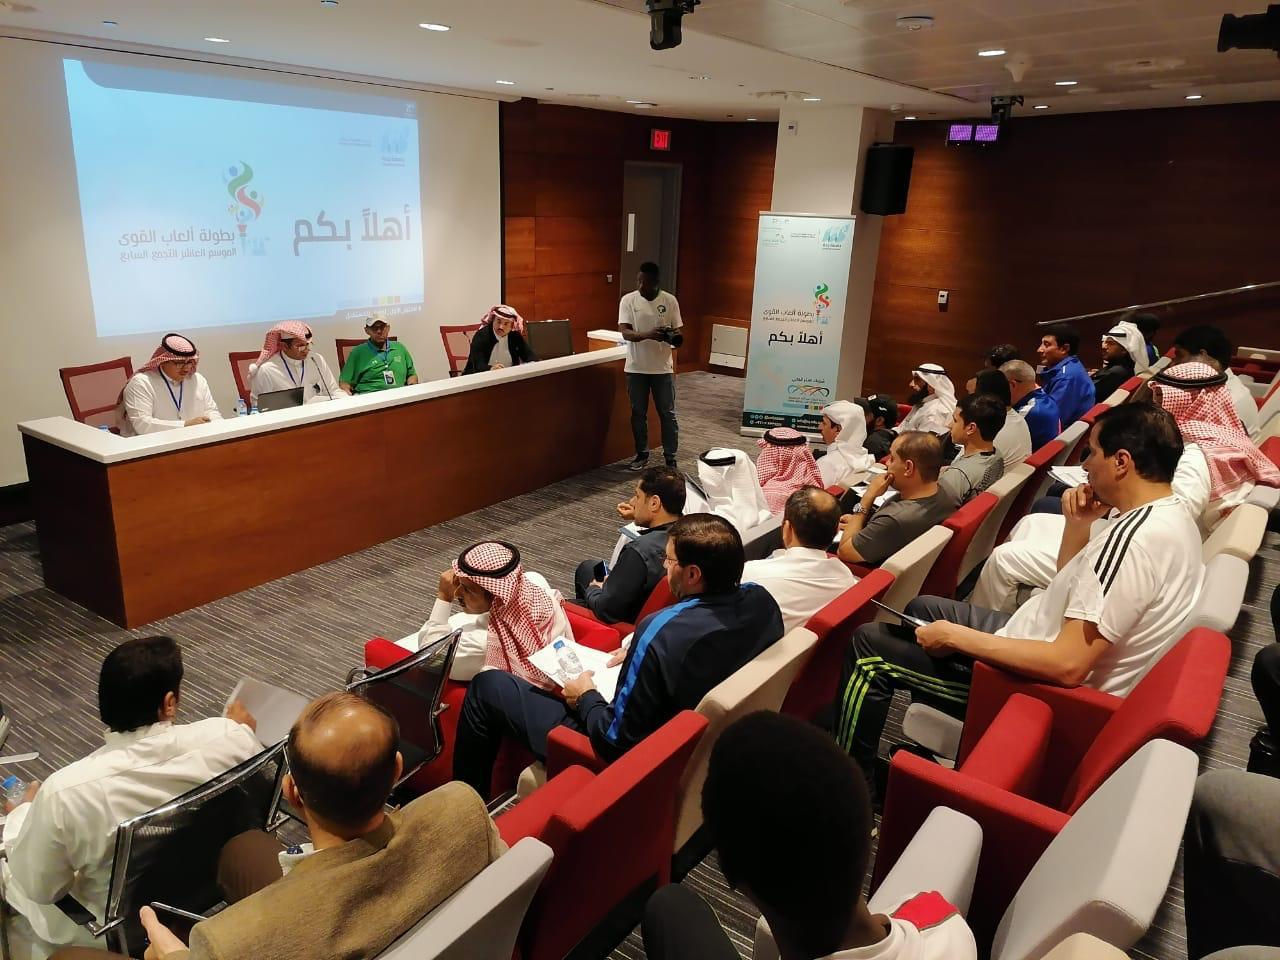 إجتماع تحضيري لفرق الجامعات السعودية المشاركة في بطولة ألعاب القوى